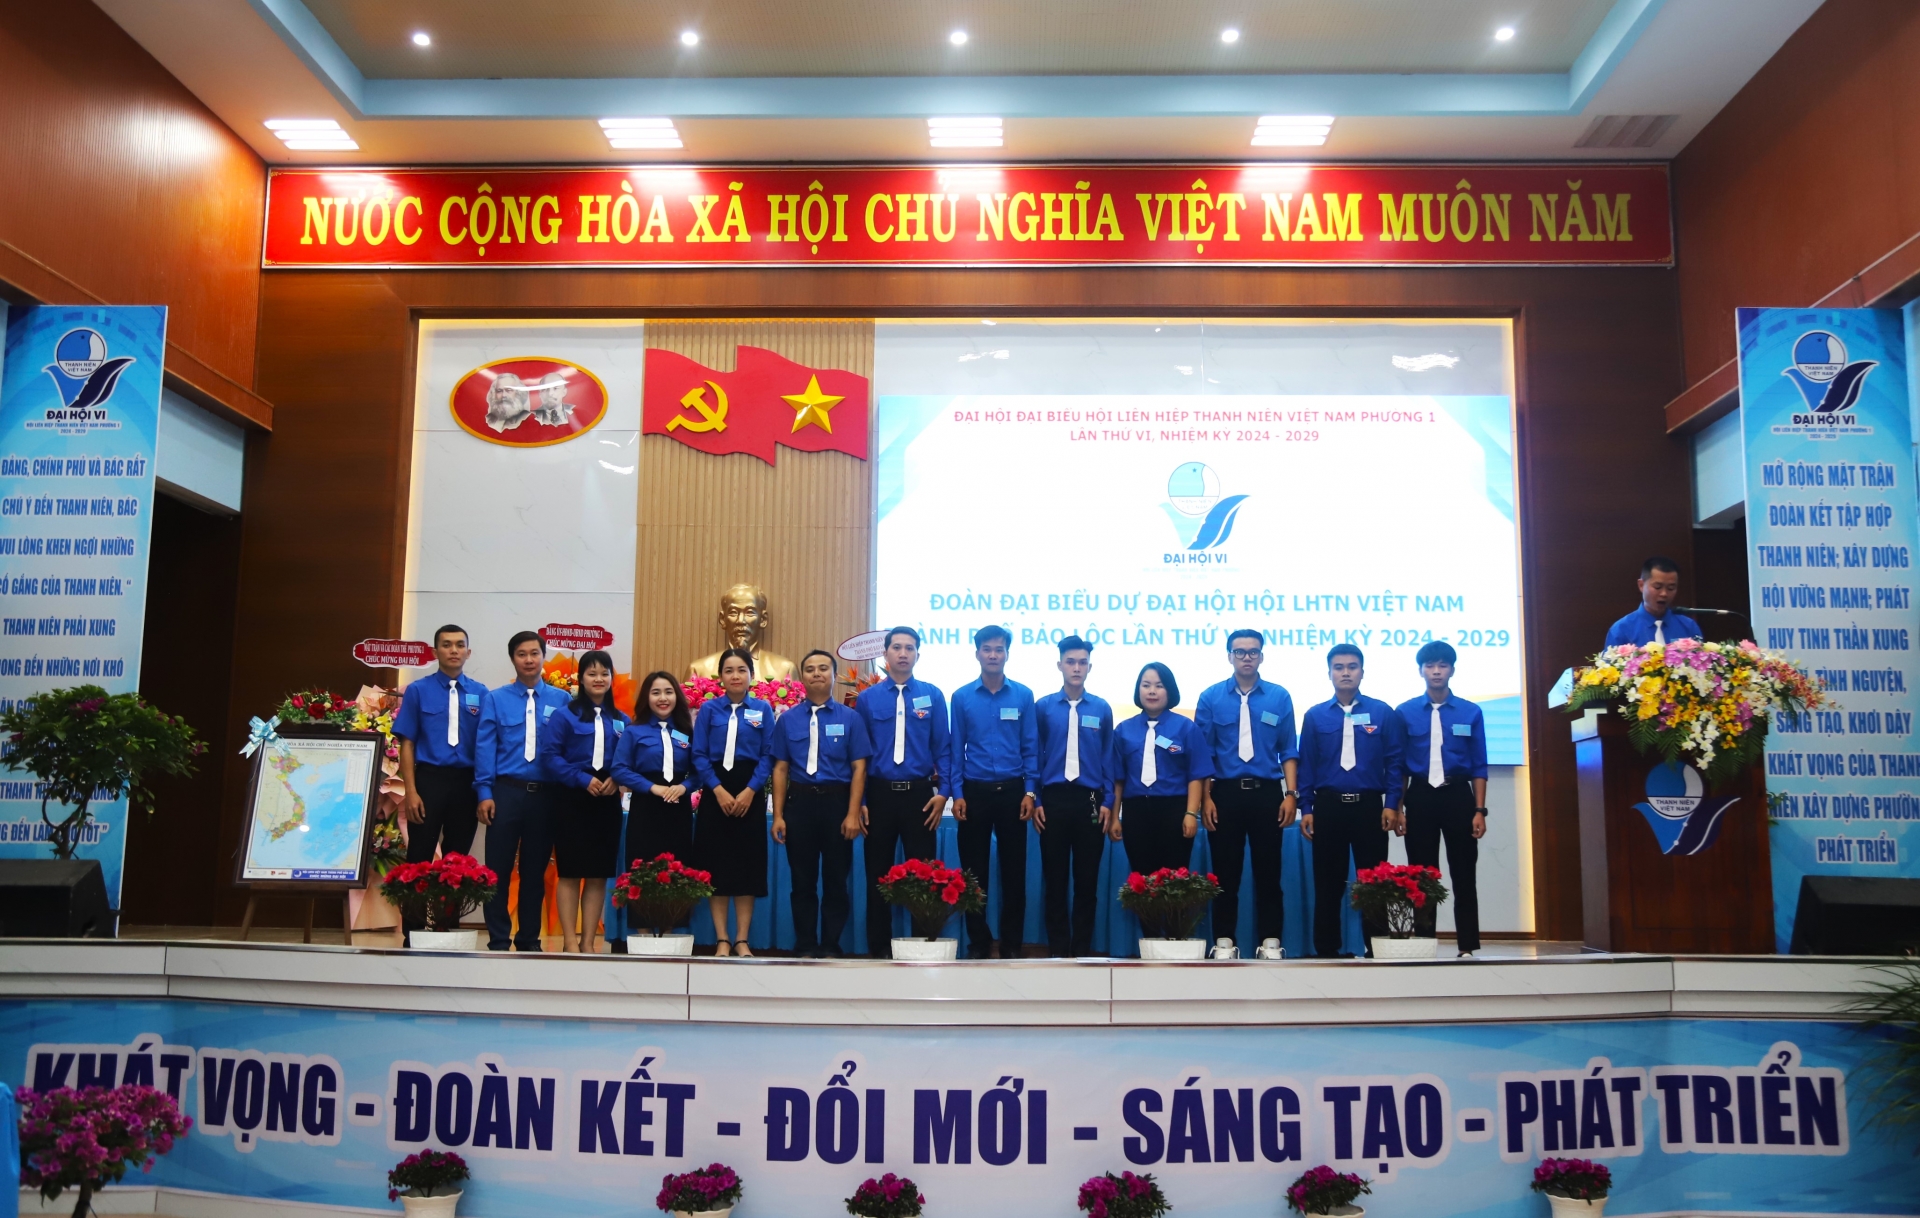 Ra mắt Ủy ban Hội LHTN Việt Nam Phường 1 (TP Bảo Lộc) nhiệm kỳ 2024 - 2029